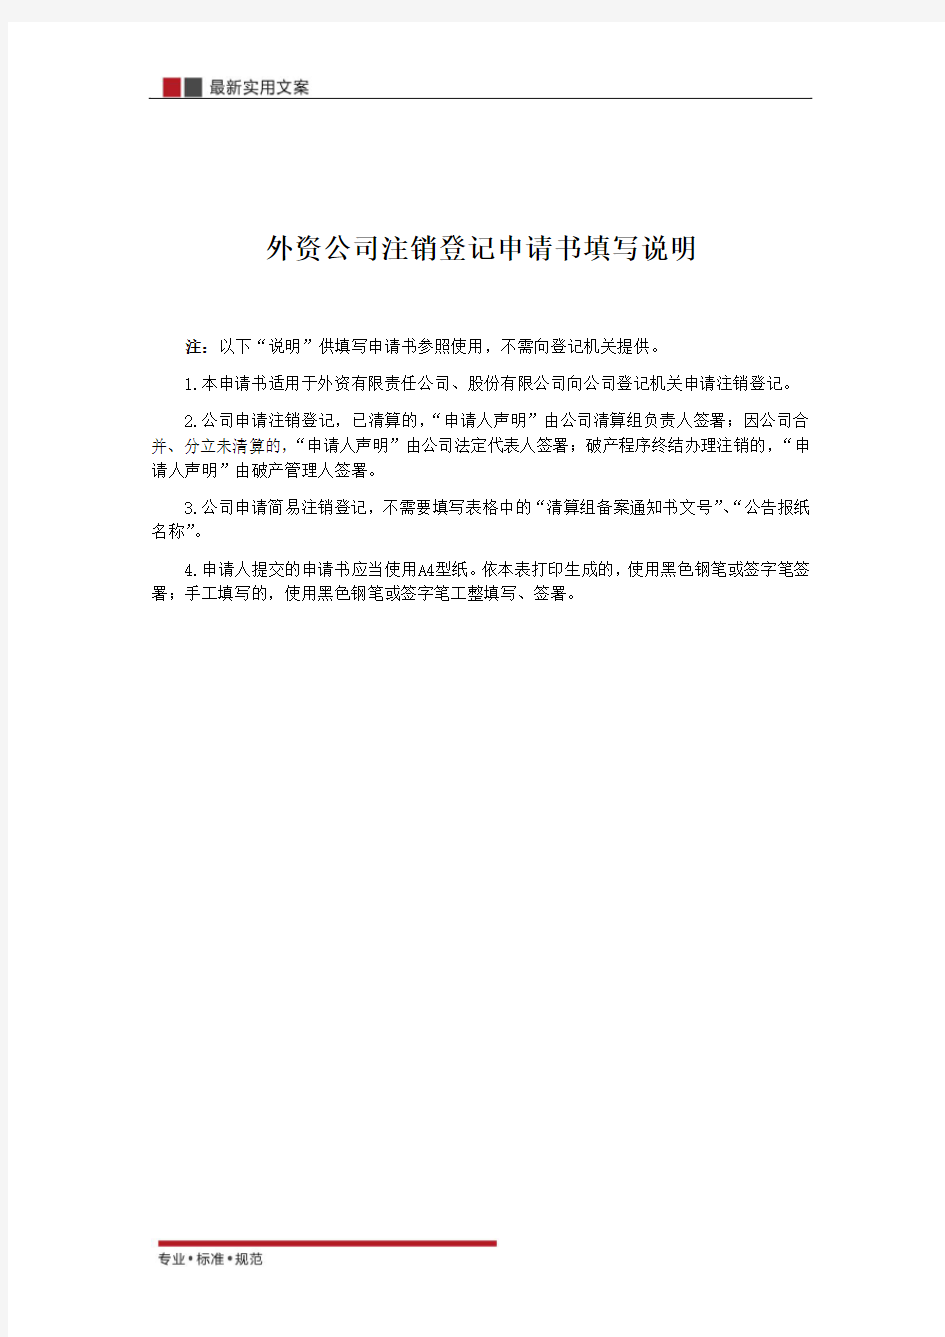 【范本】外资公司注销登记申请书(标准模板)